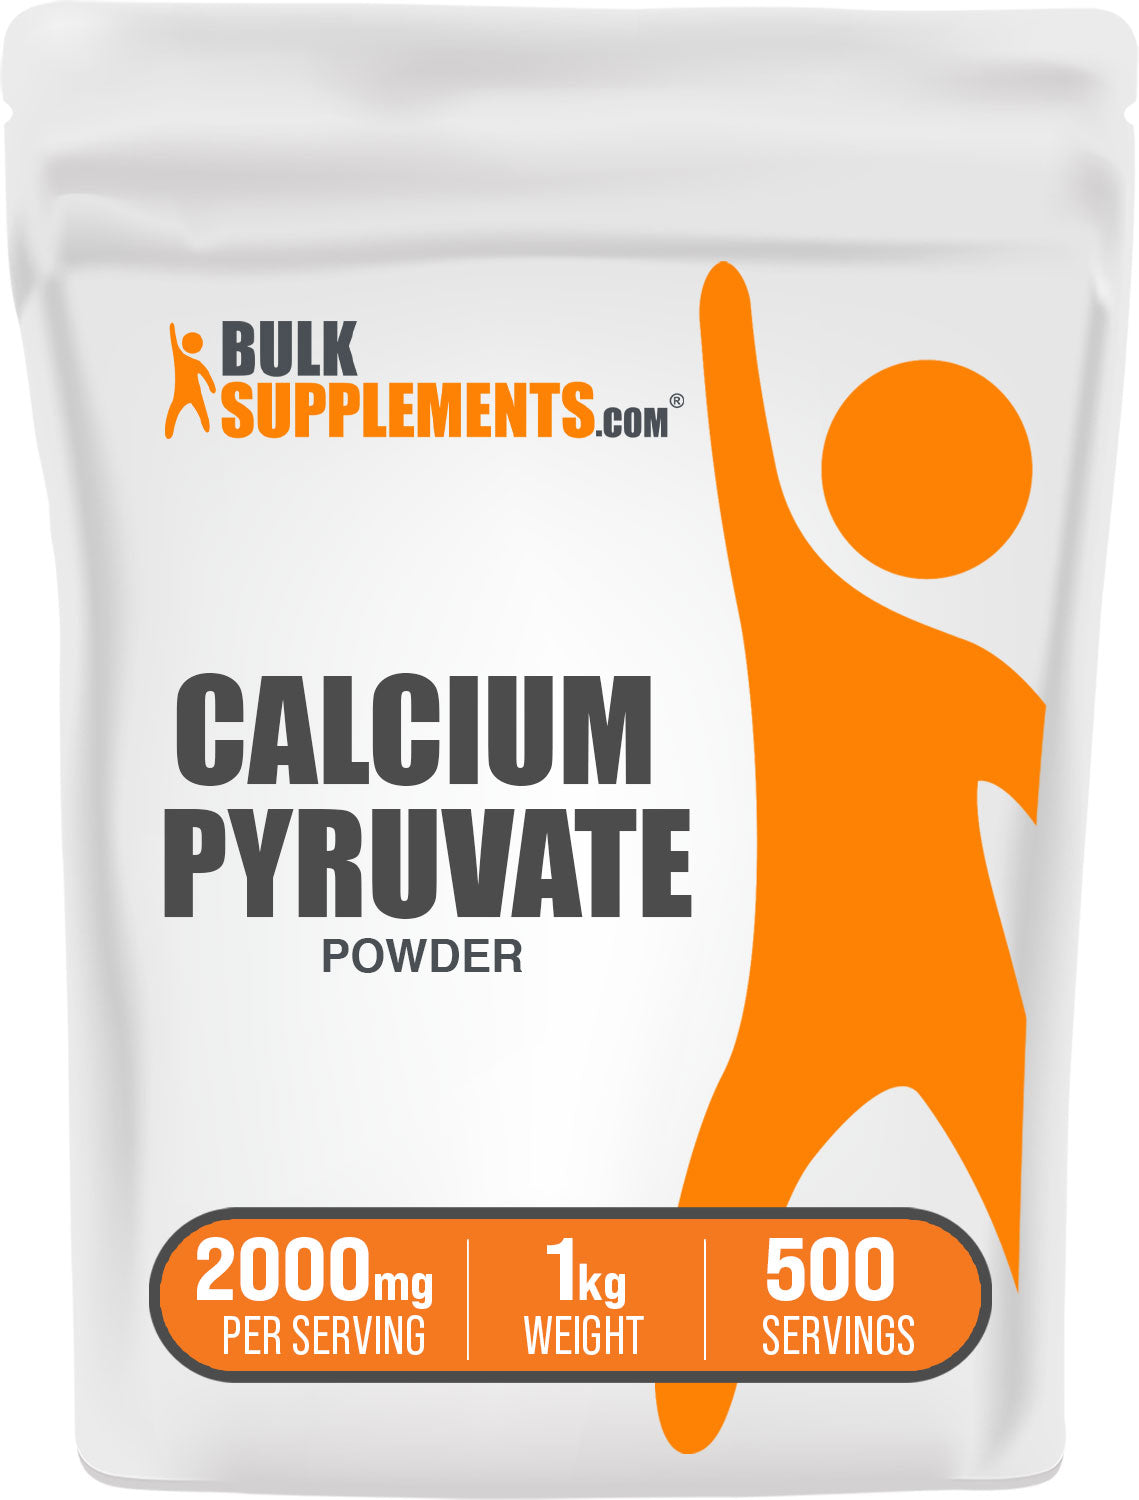 1kg calcium pyruvate